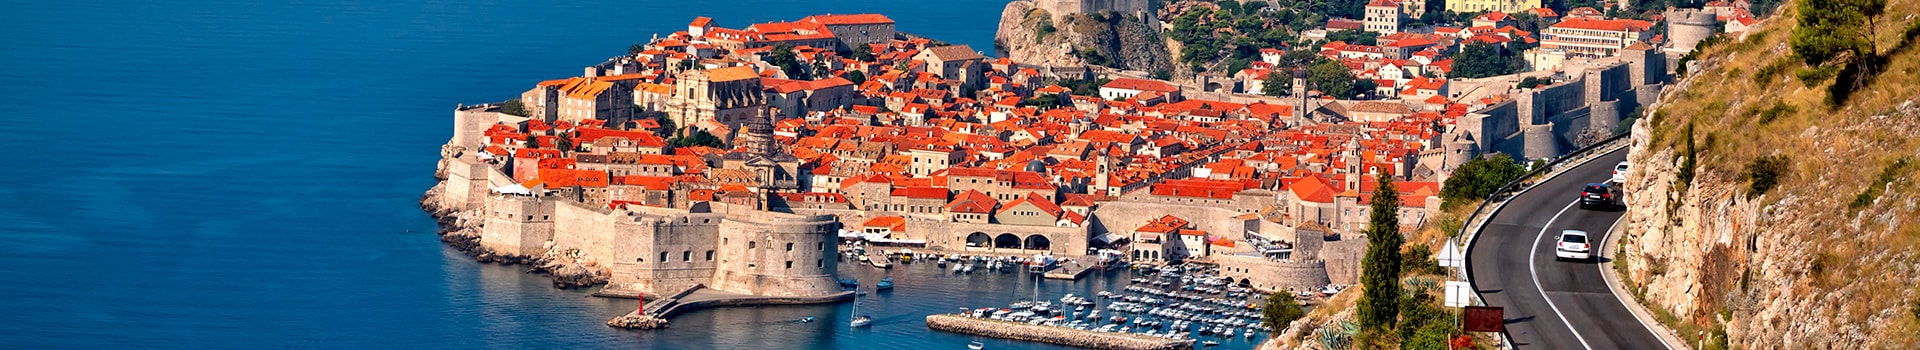 Lanzarote - Dubrovnik